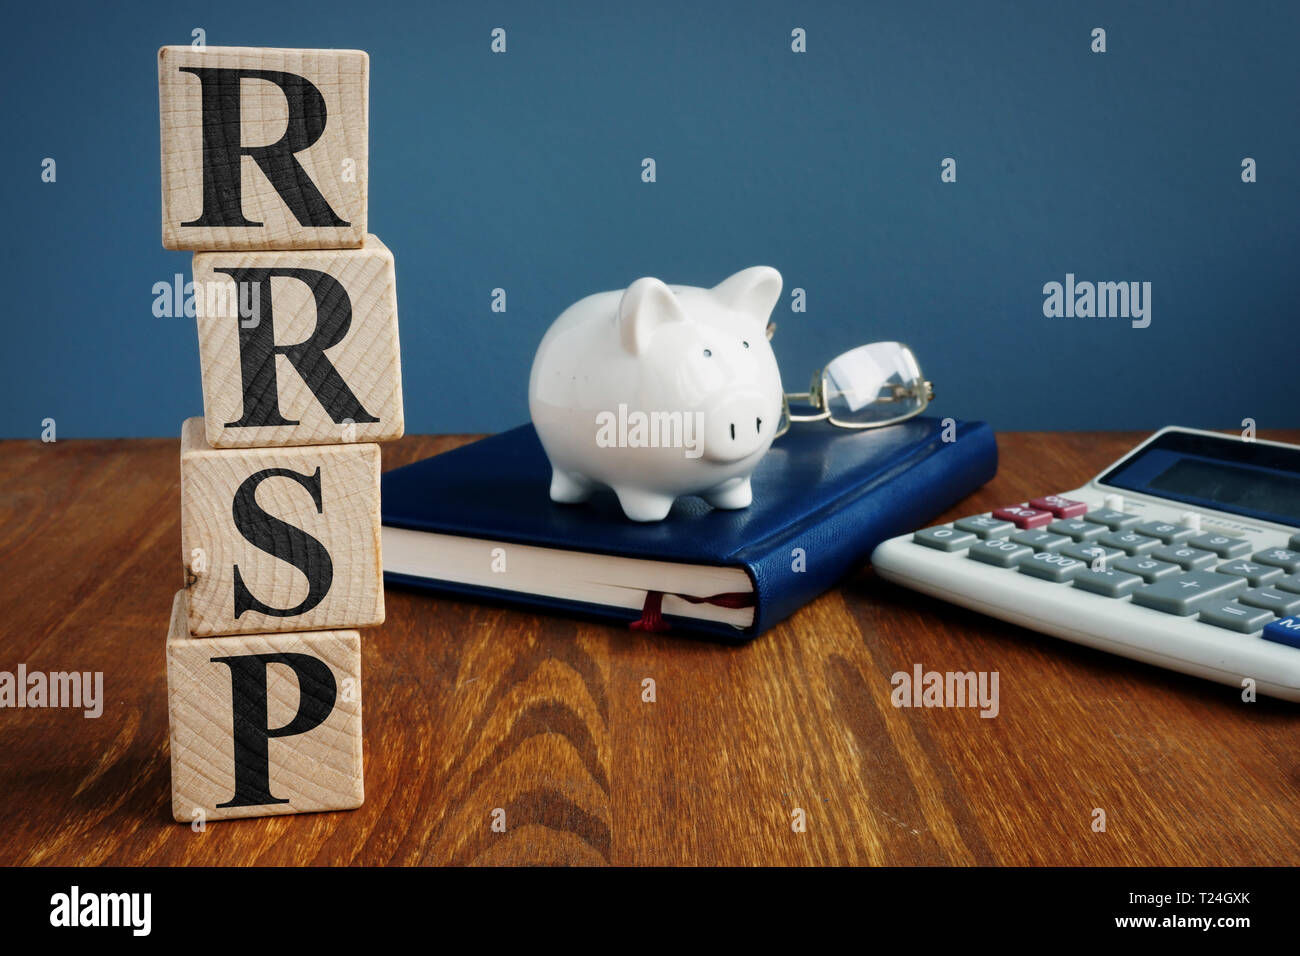 Eingetragene Retirement Savings Plan RRSP oder RSP und Sparschwein. Stockfoto